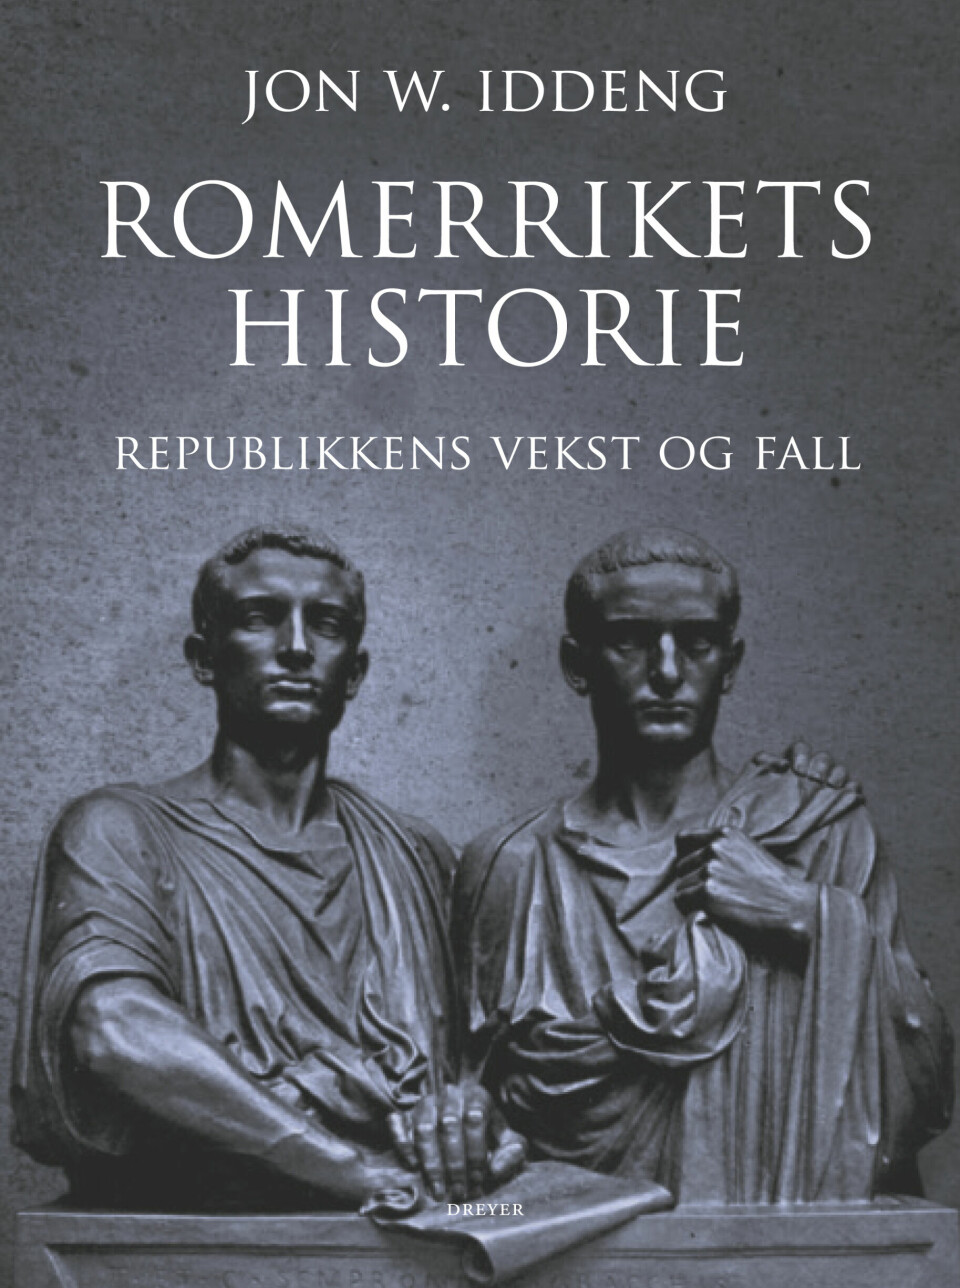 Jon W. Iddeng har skrevet boka Romerrikets Historie